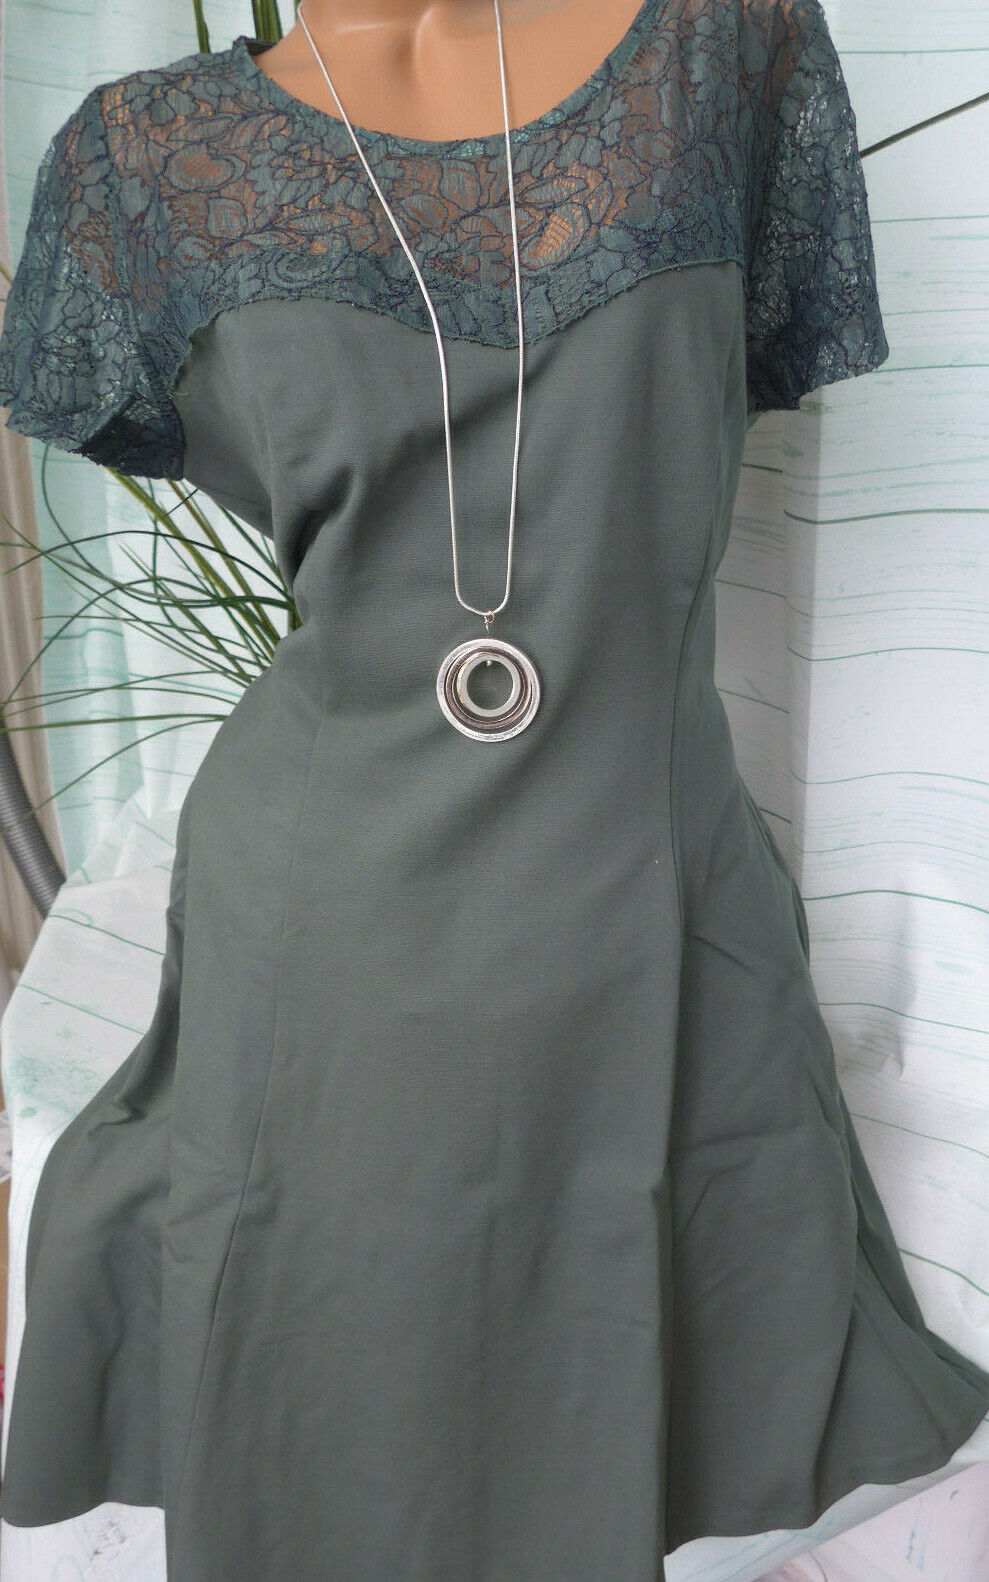 Belloya Kleid Etuikleid Gr. 44 bis 54 Khaki mit Spitze (855) Große Größen